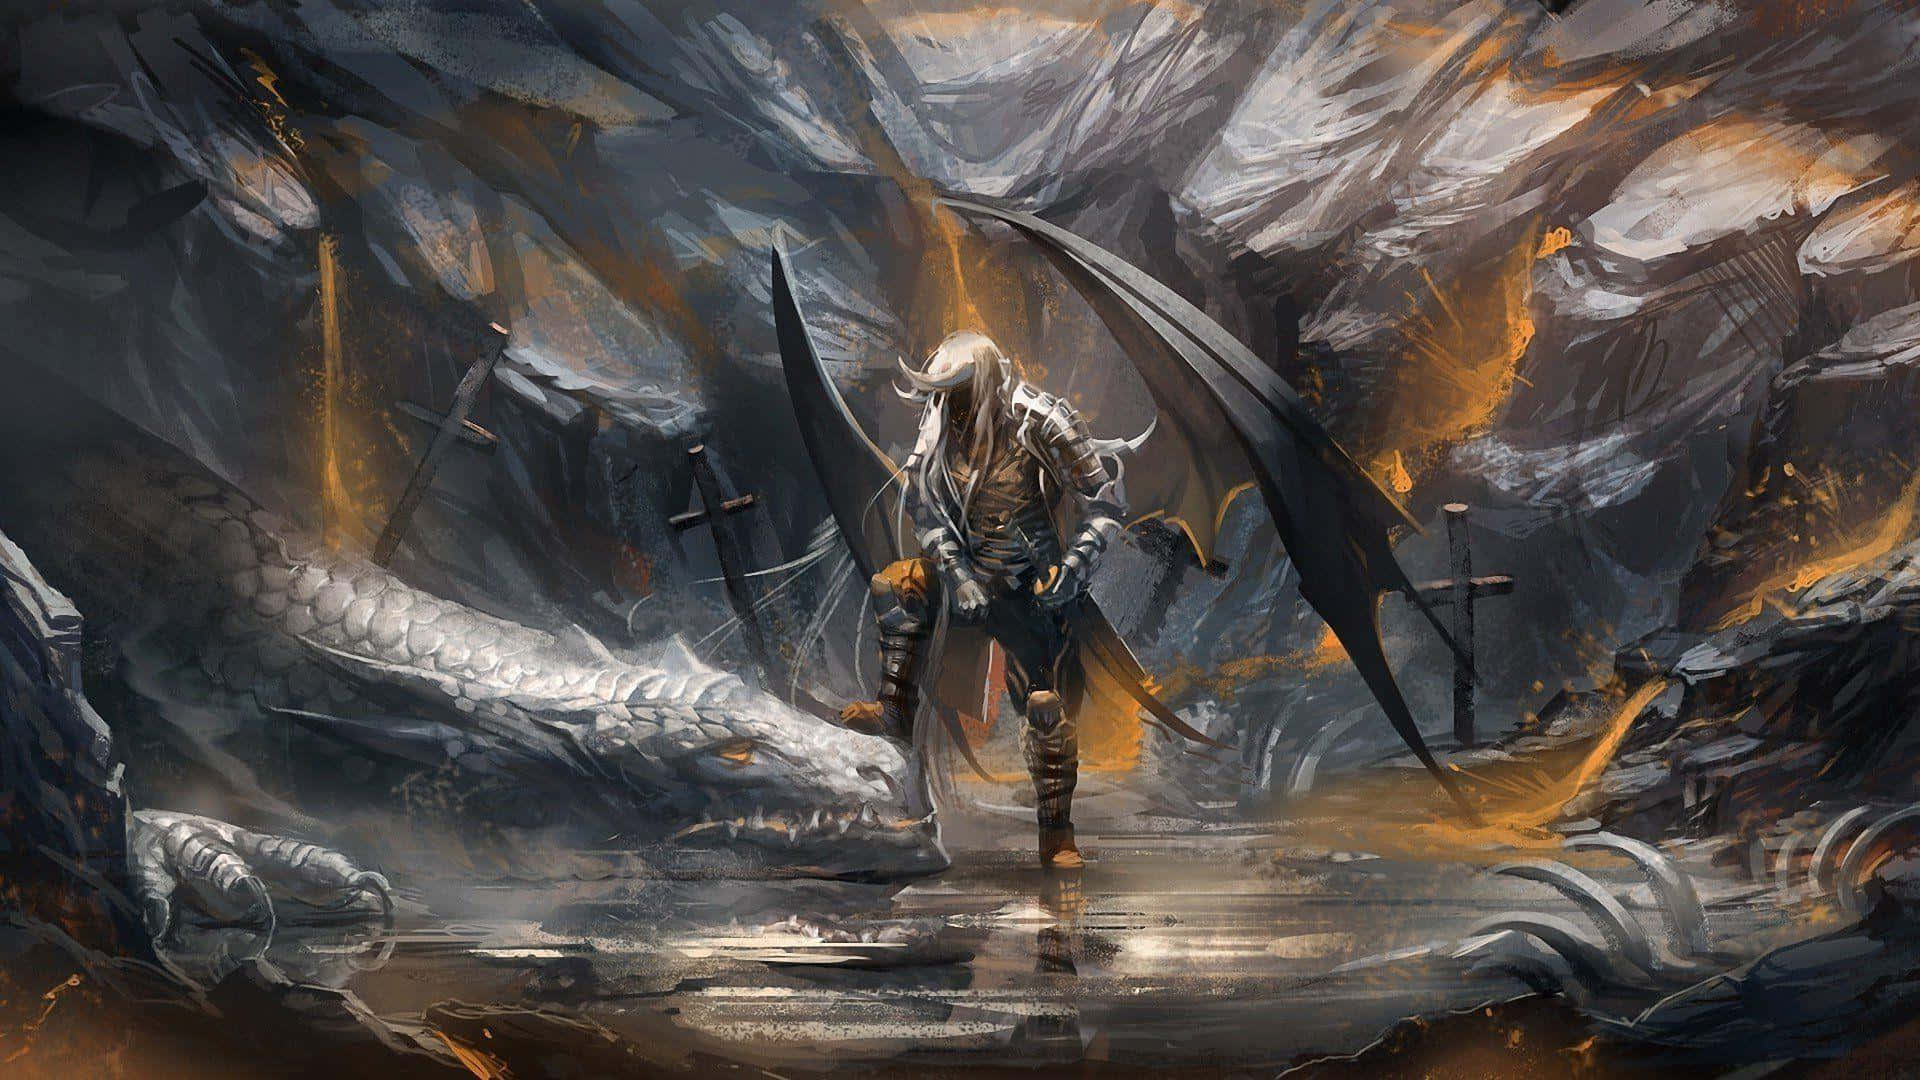 The fierce Dragon Slayer Ornstein poised for battle. Wallpaper